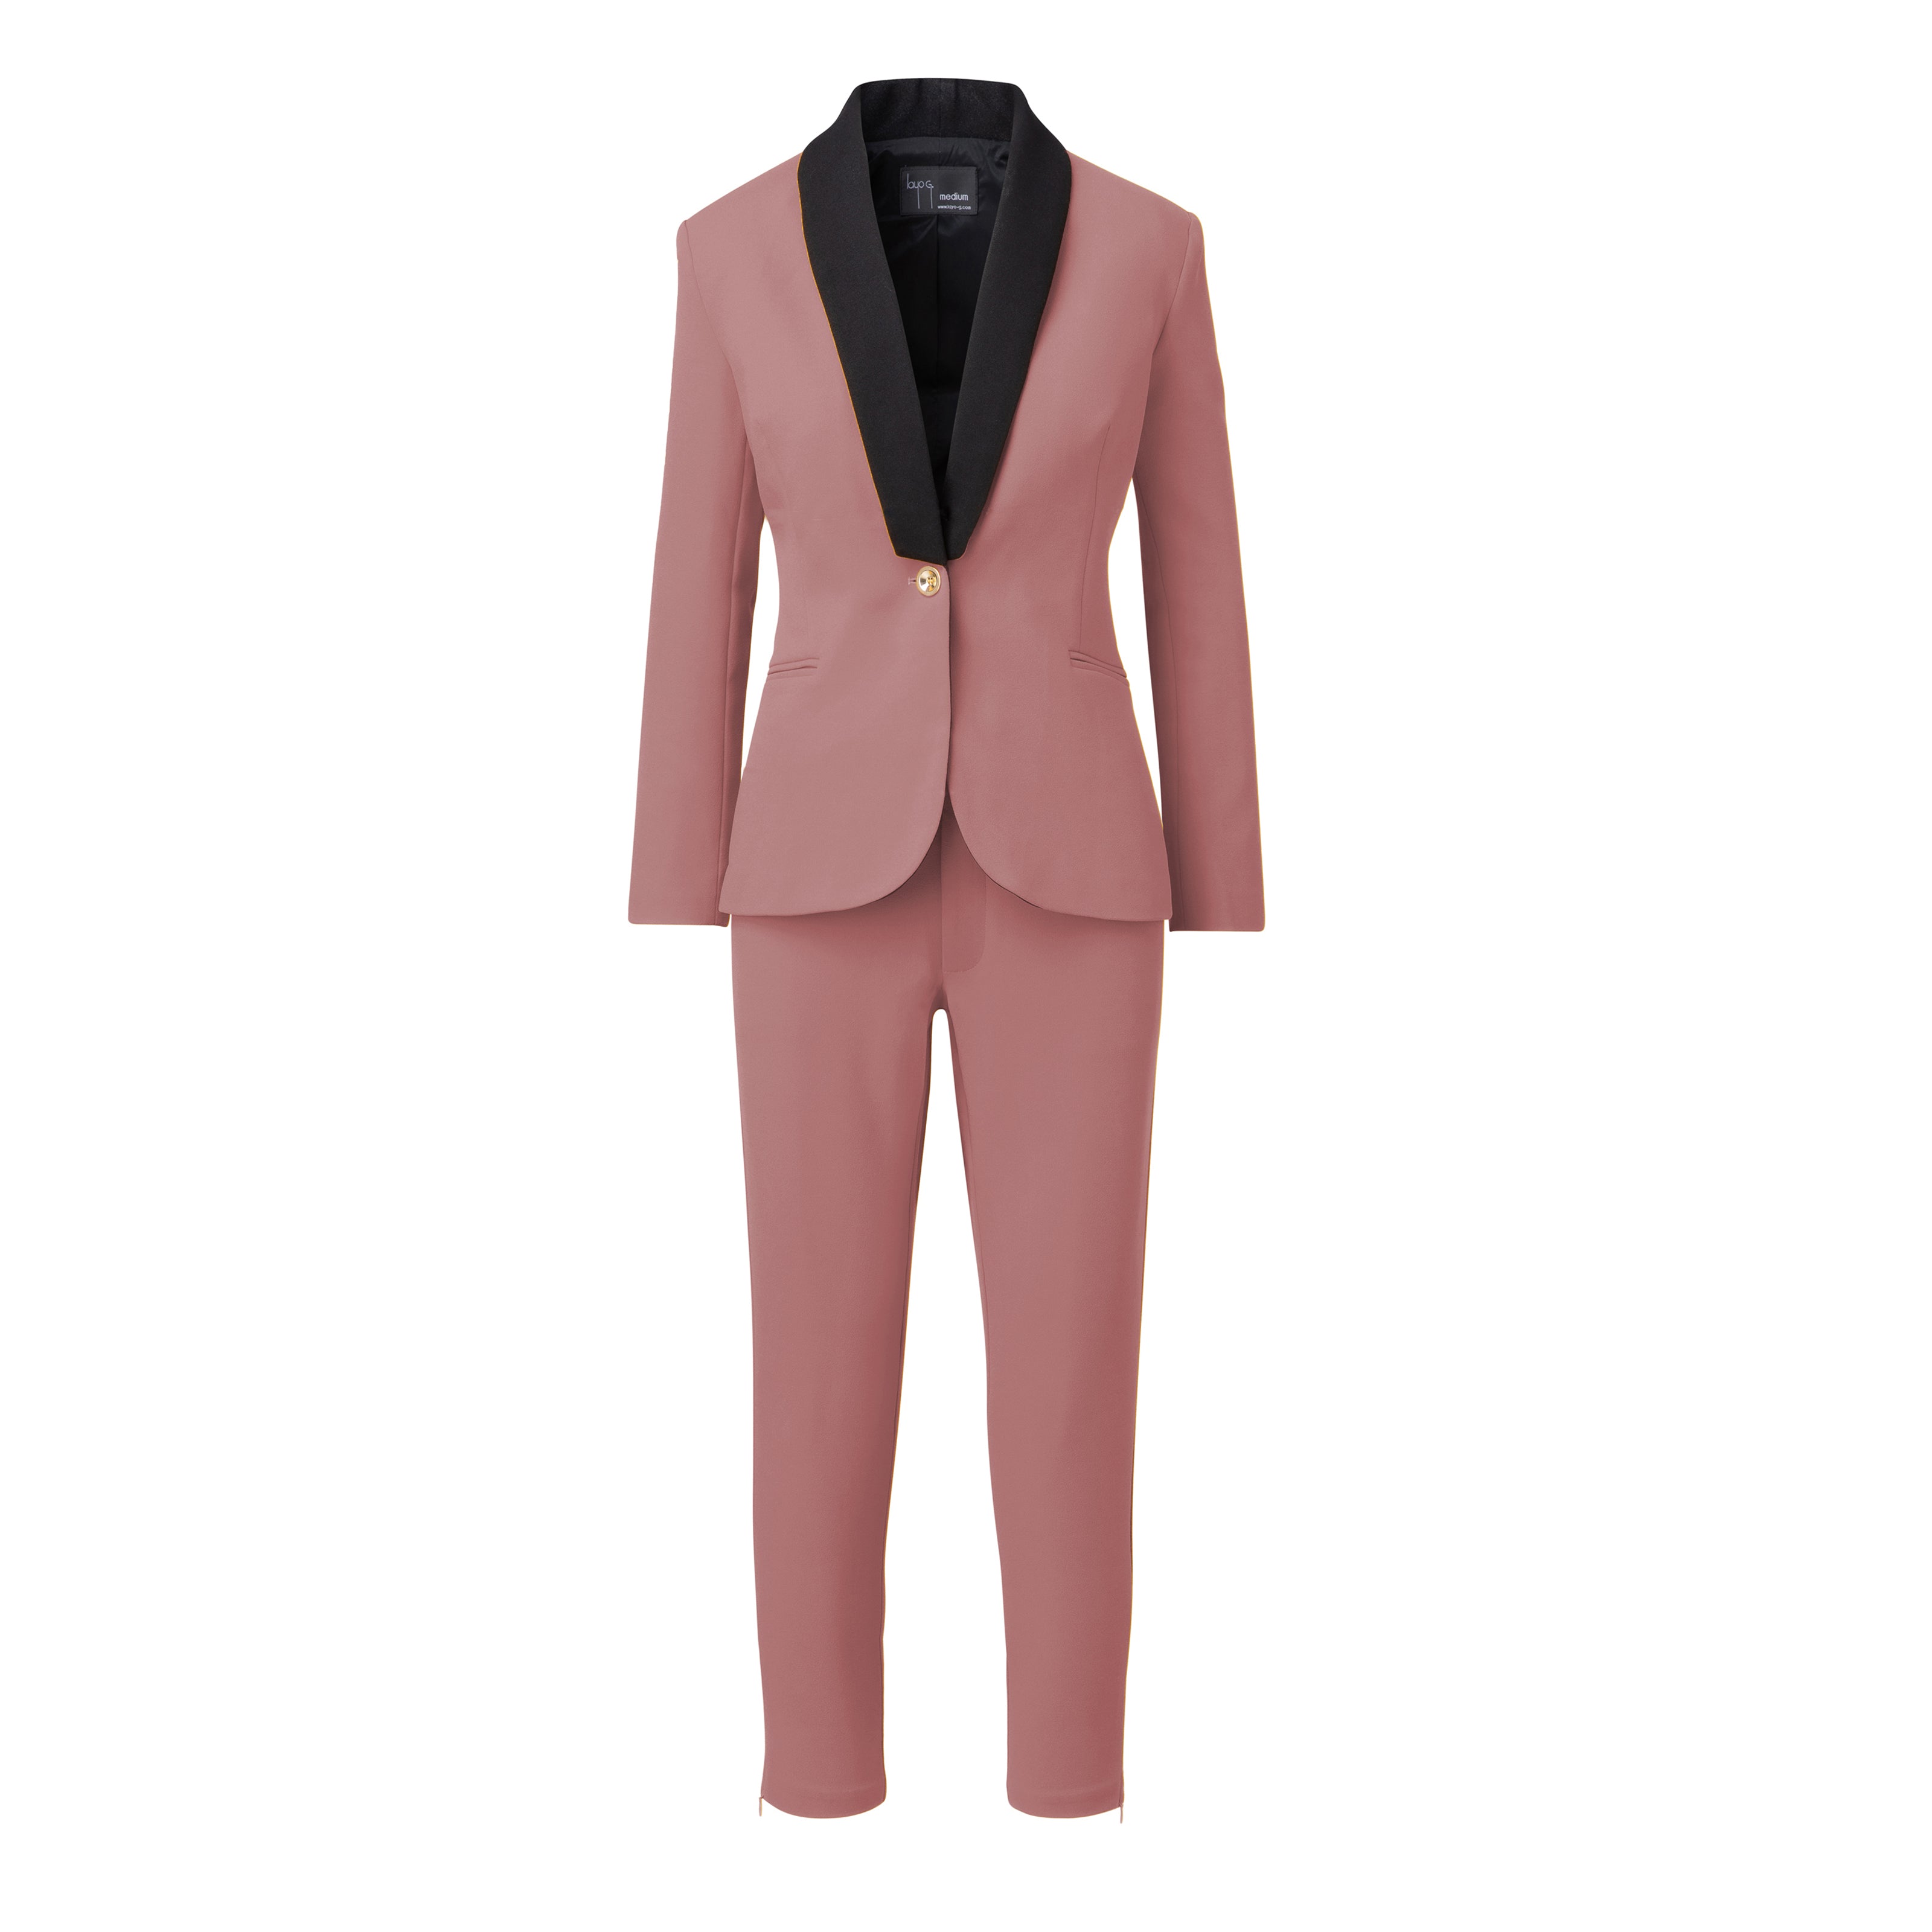 Buy Audstro. Blush Pink Women Formal Suit at